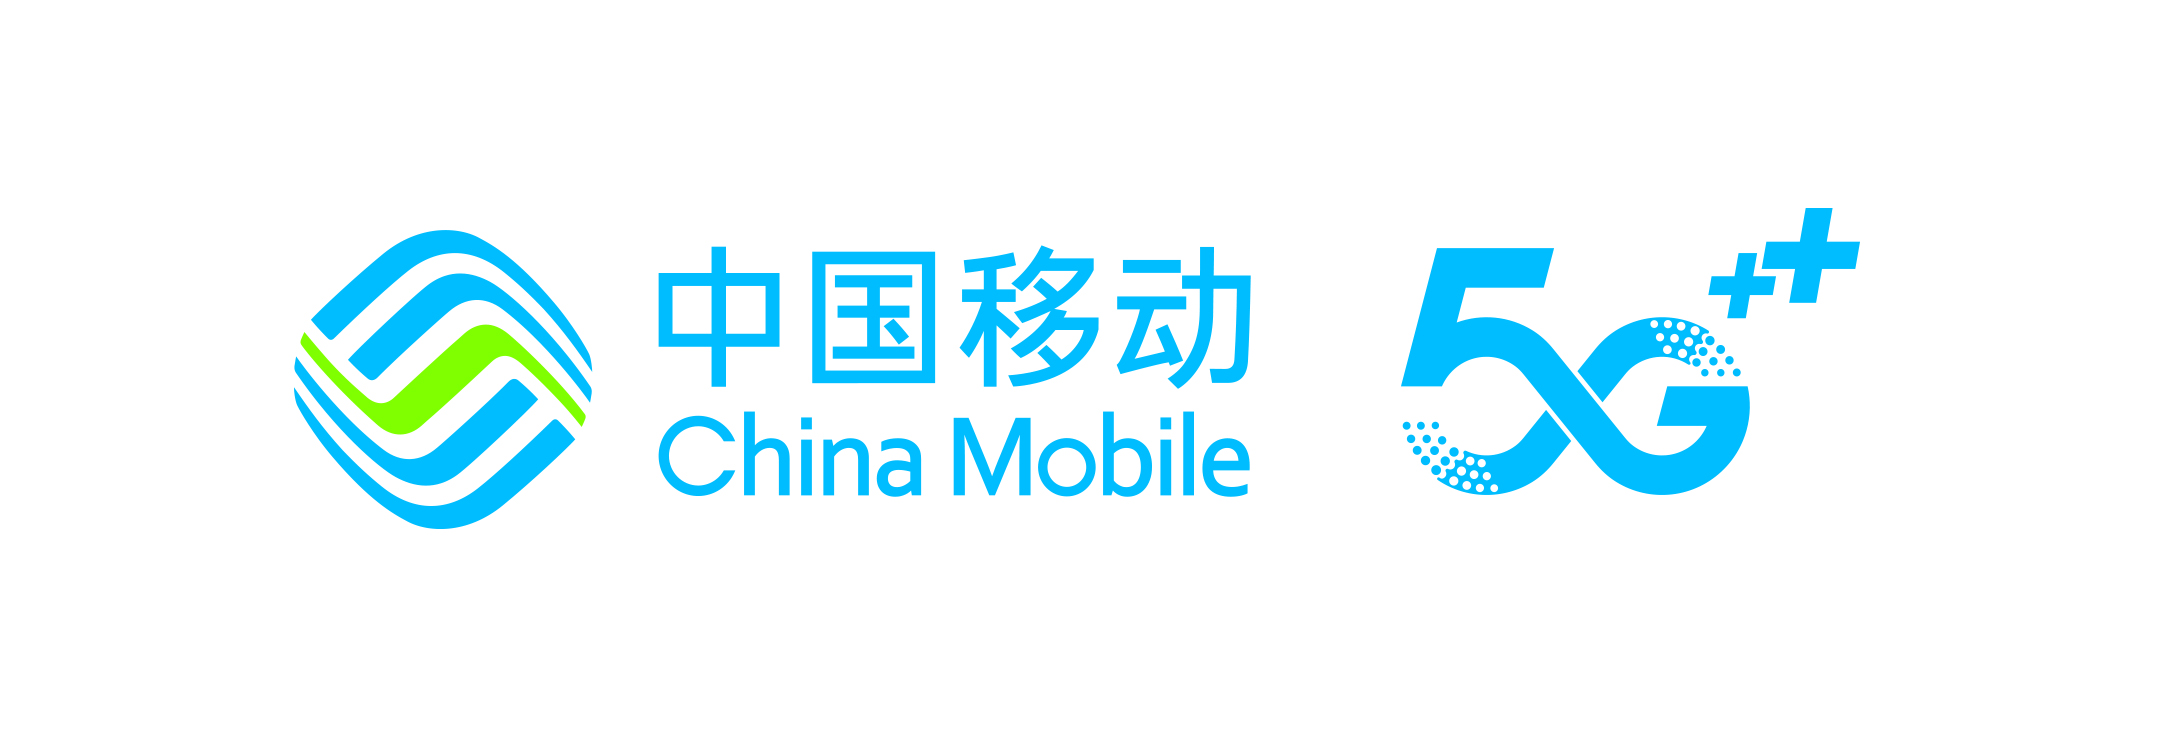 中国移动logo 